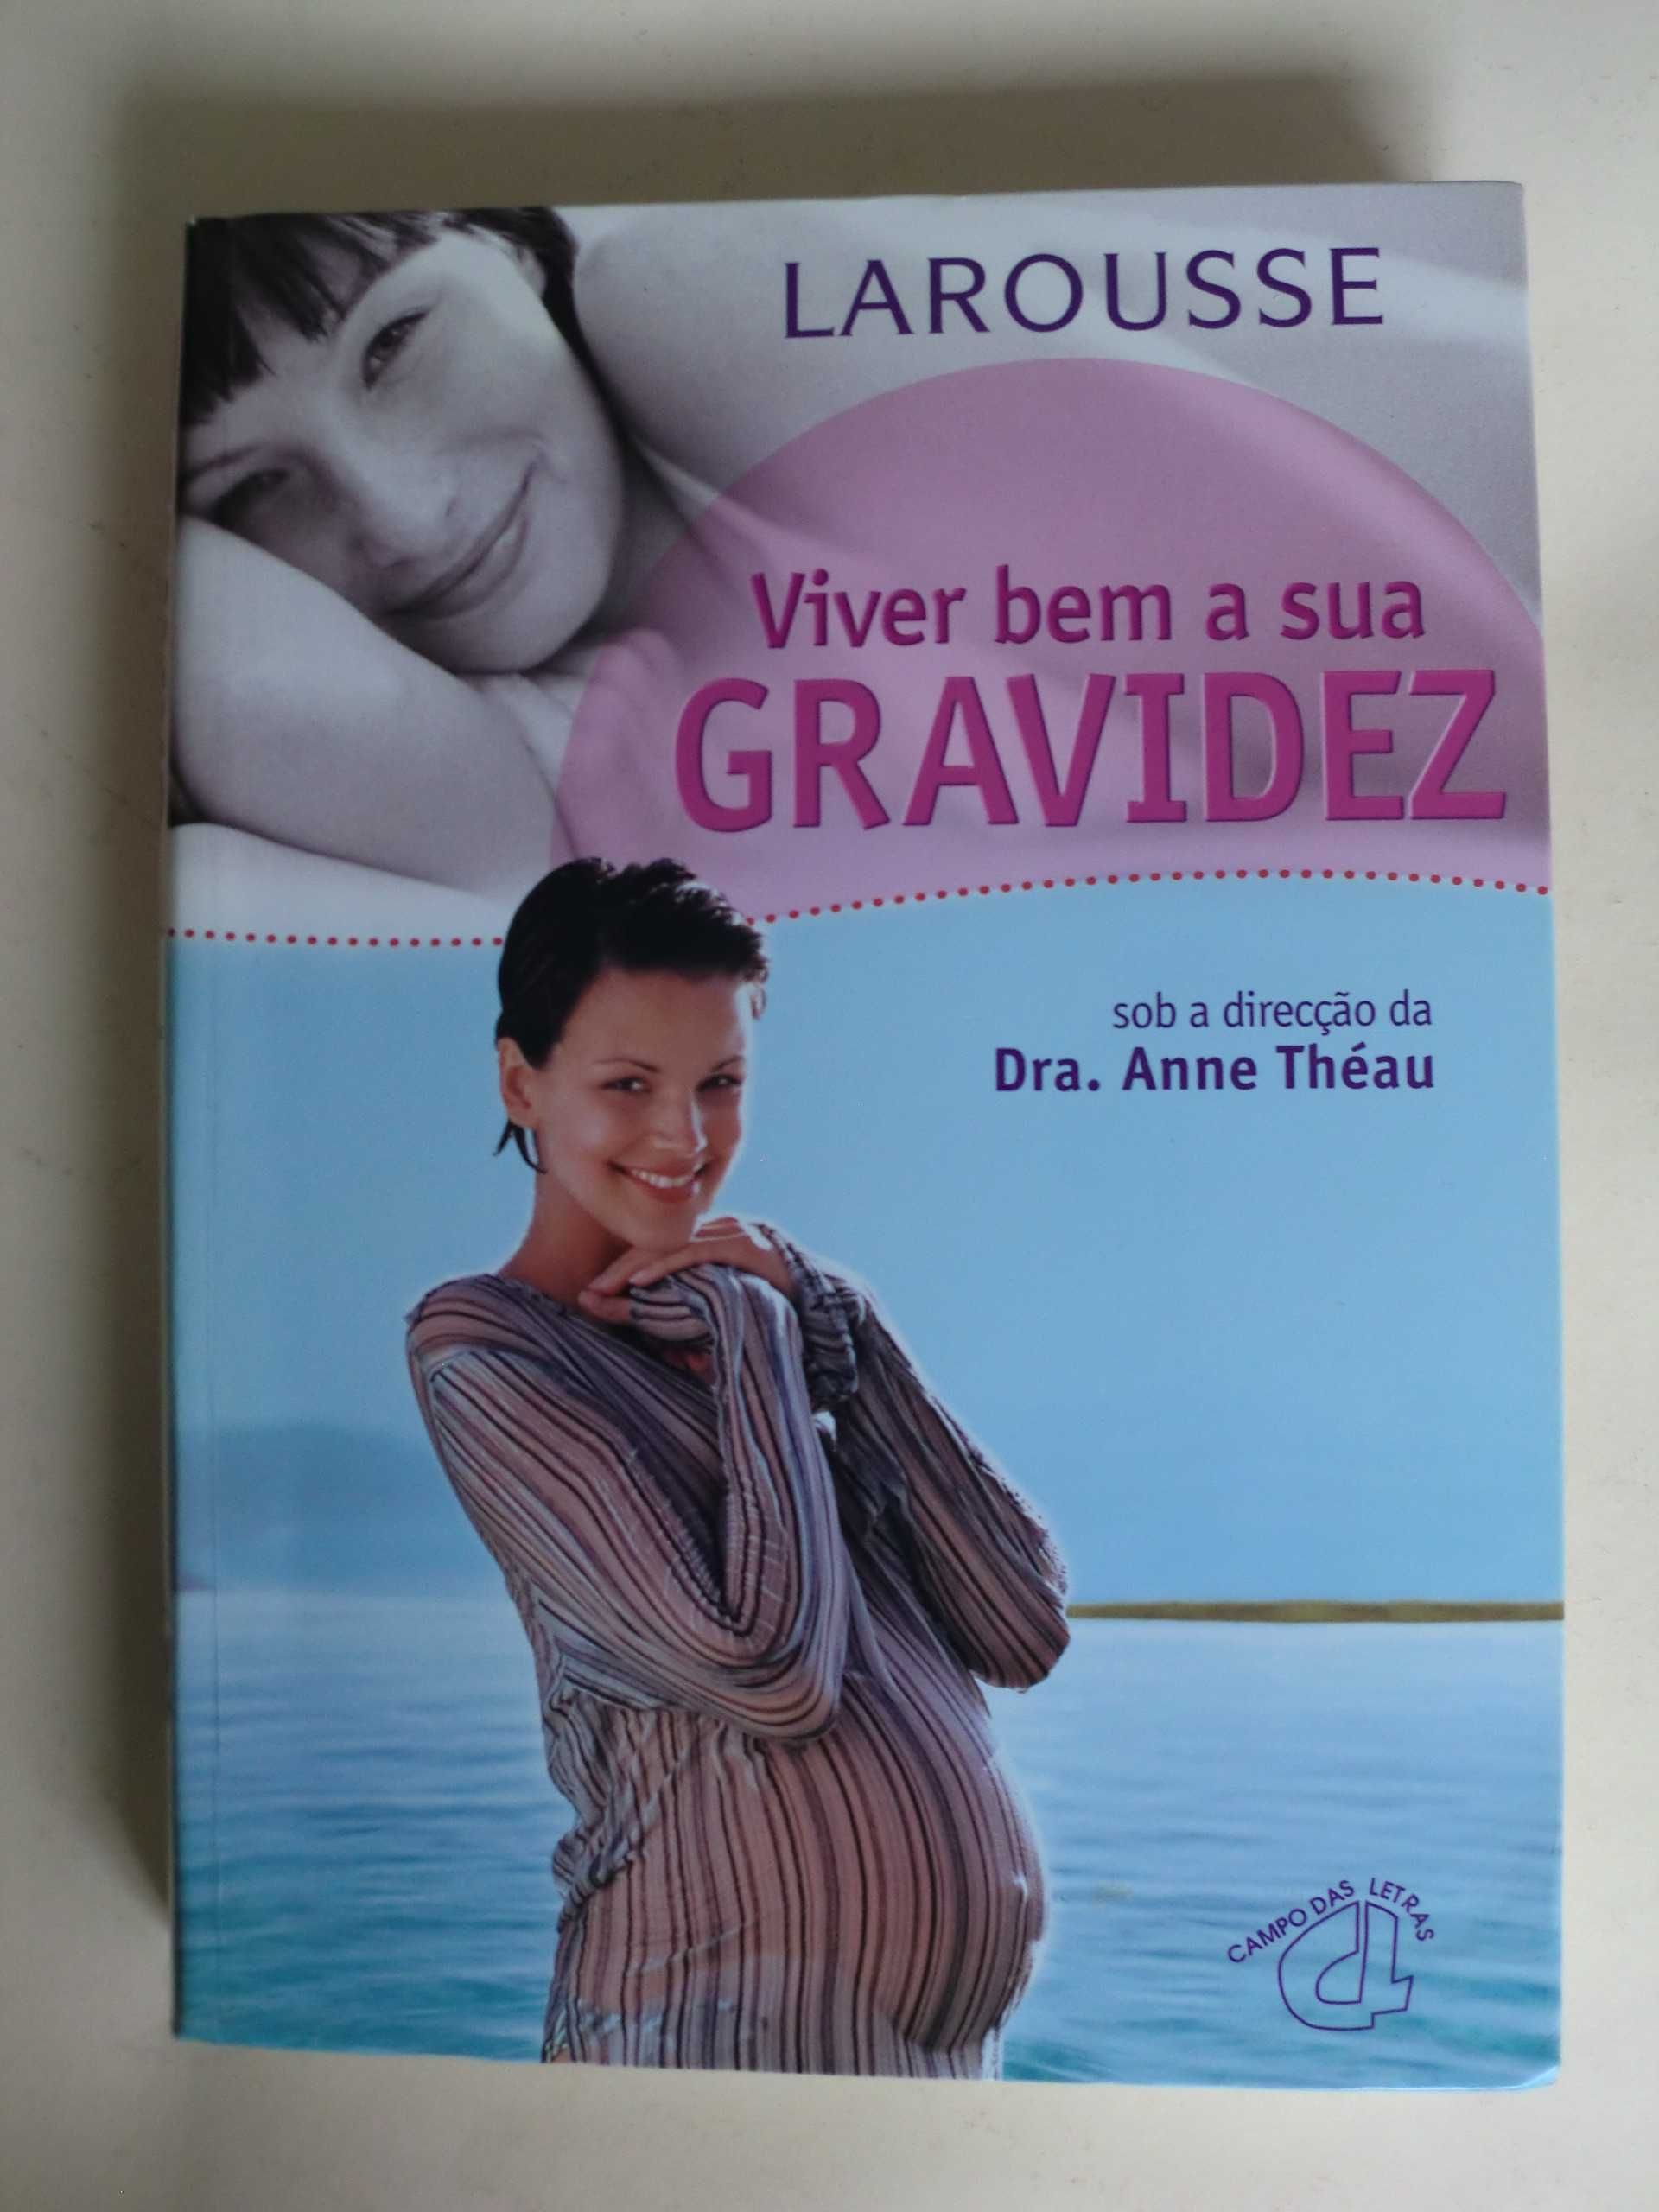 Viver bem a sua Gravidez - Larousse
Sob a direcção da
Drª Anne Théau